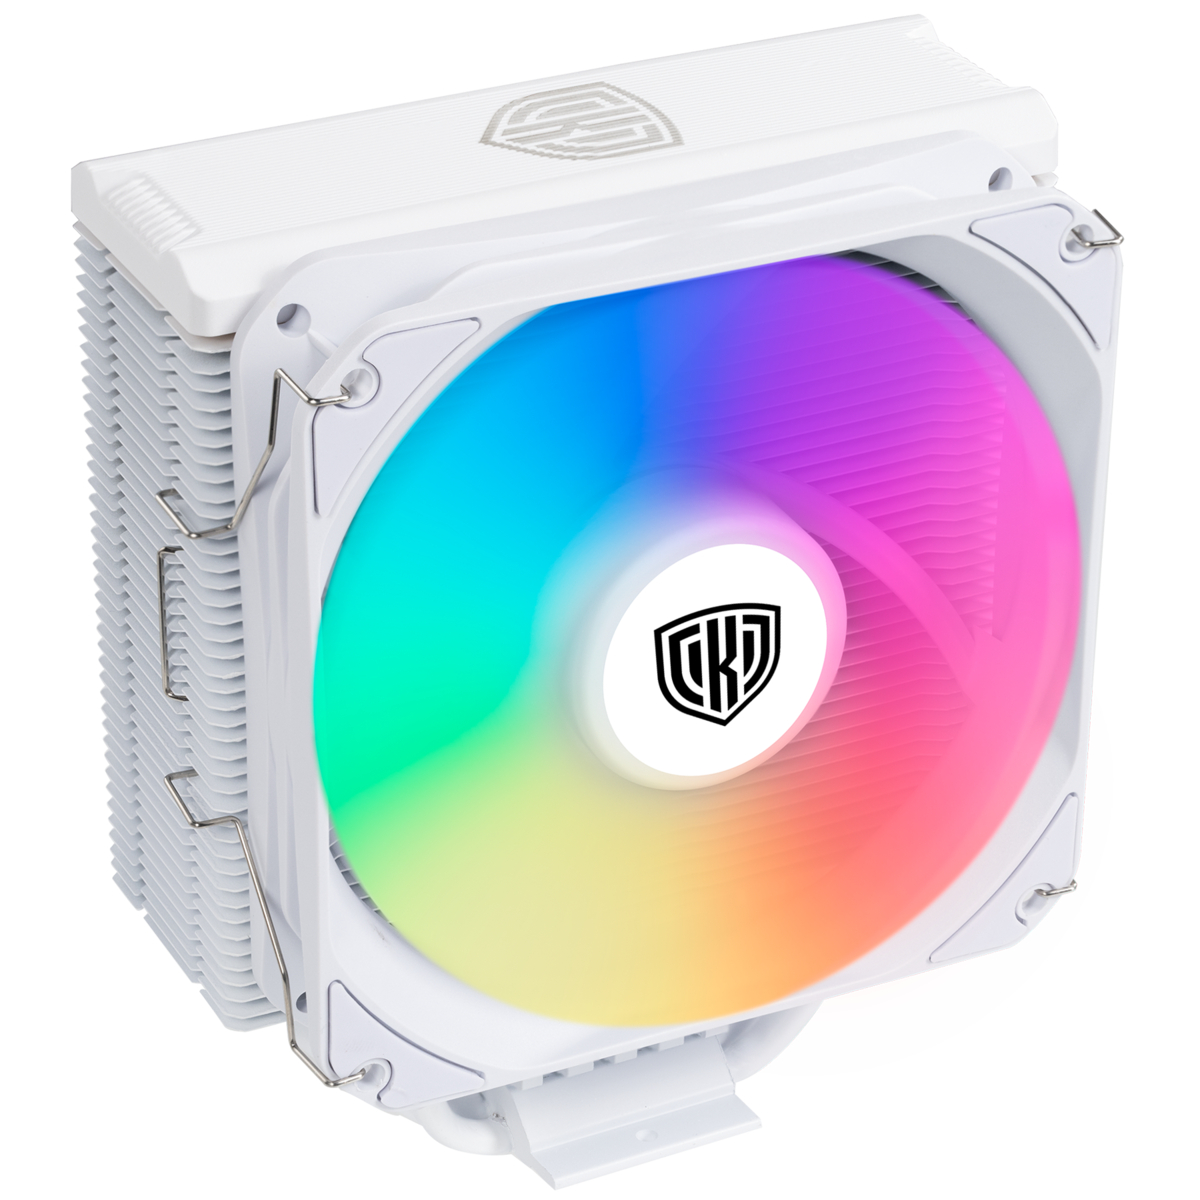 Kolink - Cooler CPU Kolink Umbra EX180W White Edition ARGB - 120mm